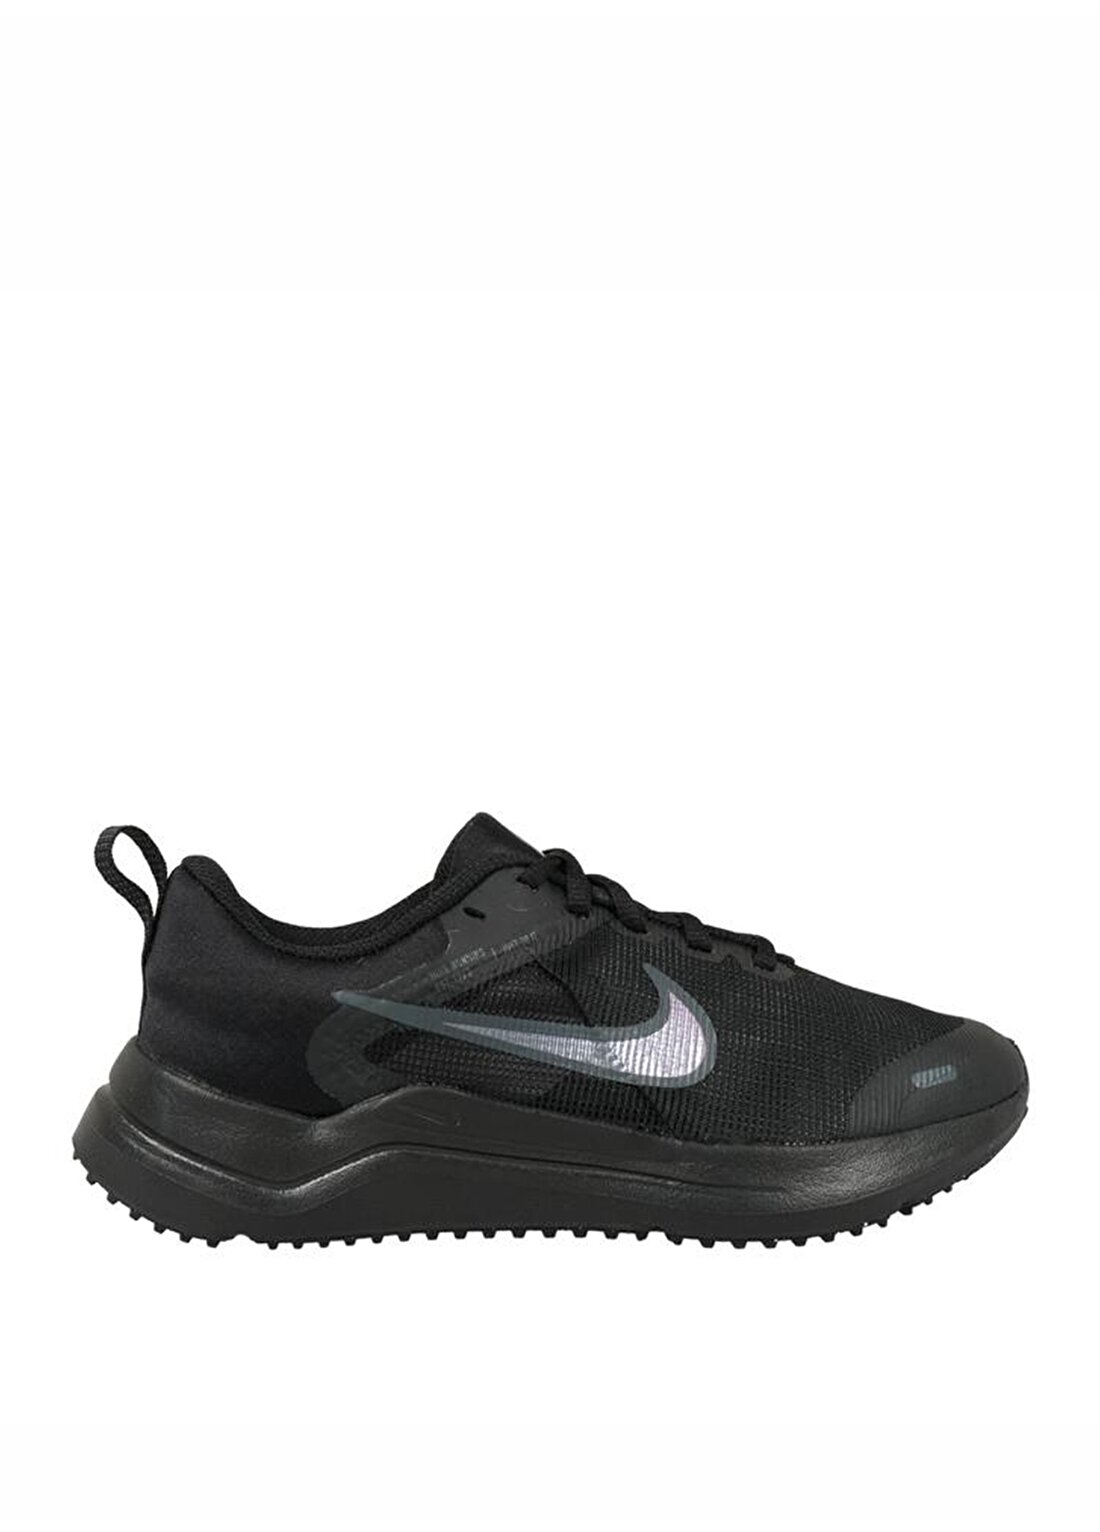 Nike Siyah - Gri - Gümüş Kız Çocuk Yürüyüş Ayakkabısı DM4194-002 NIKE DOWNSHIFTER 12 NN